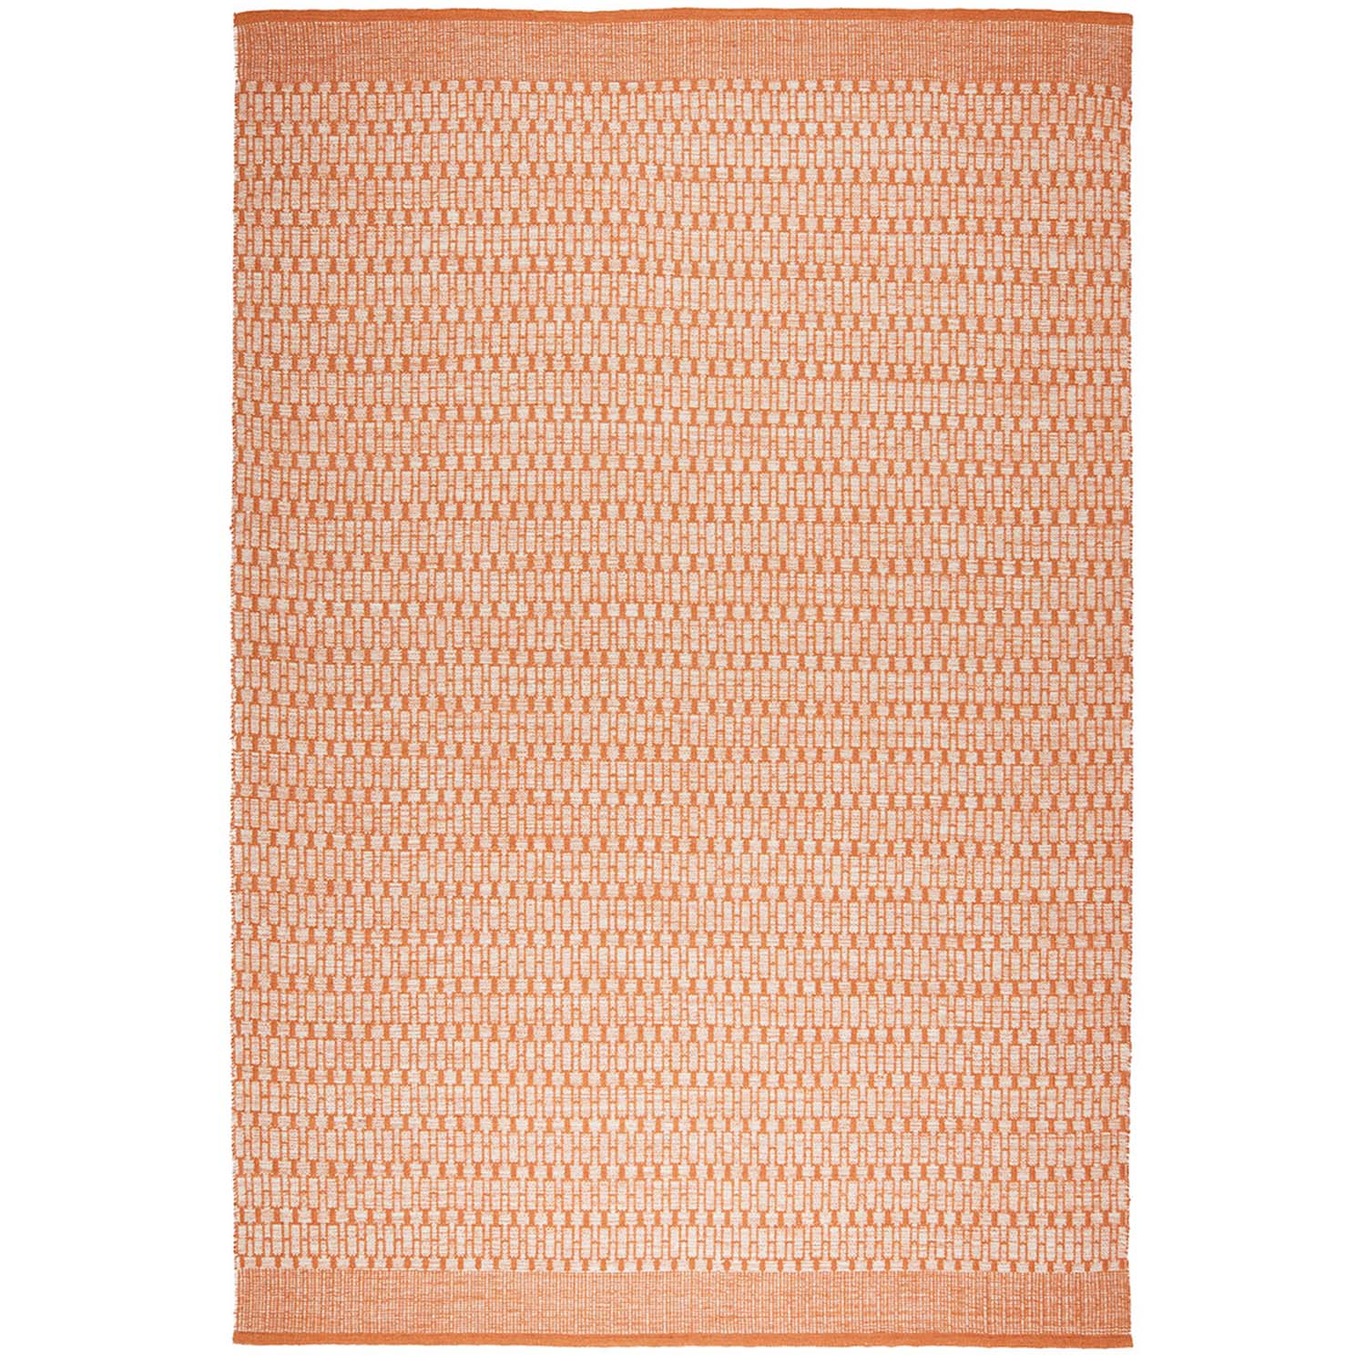 Mahi Wool Rug Off-white / Orange, 170x240 cm